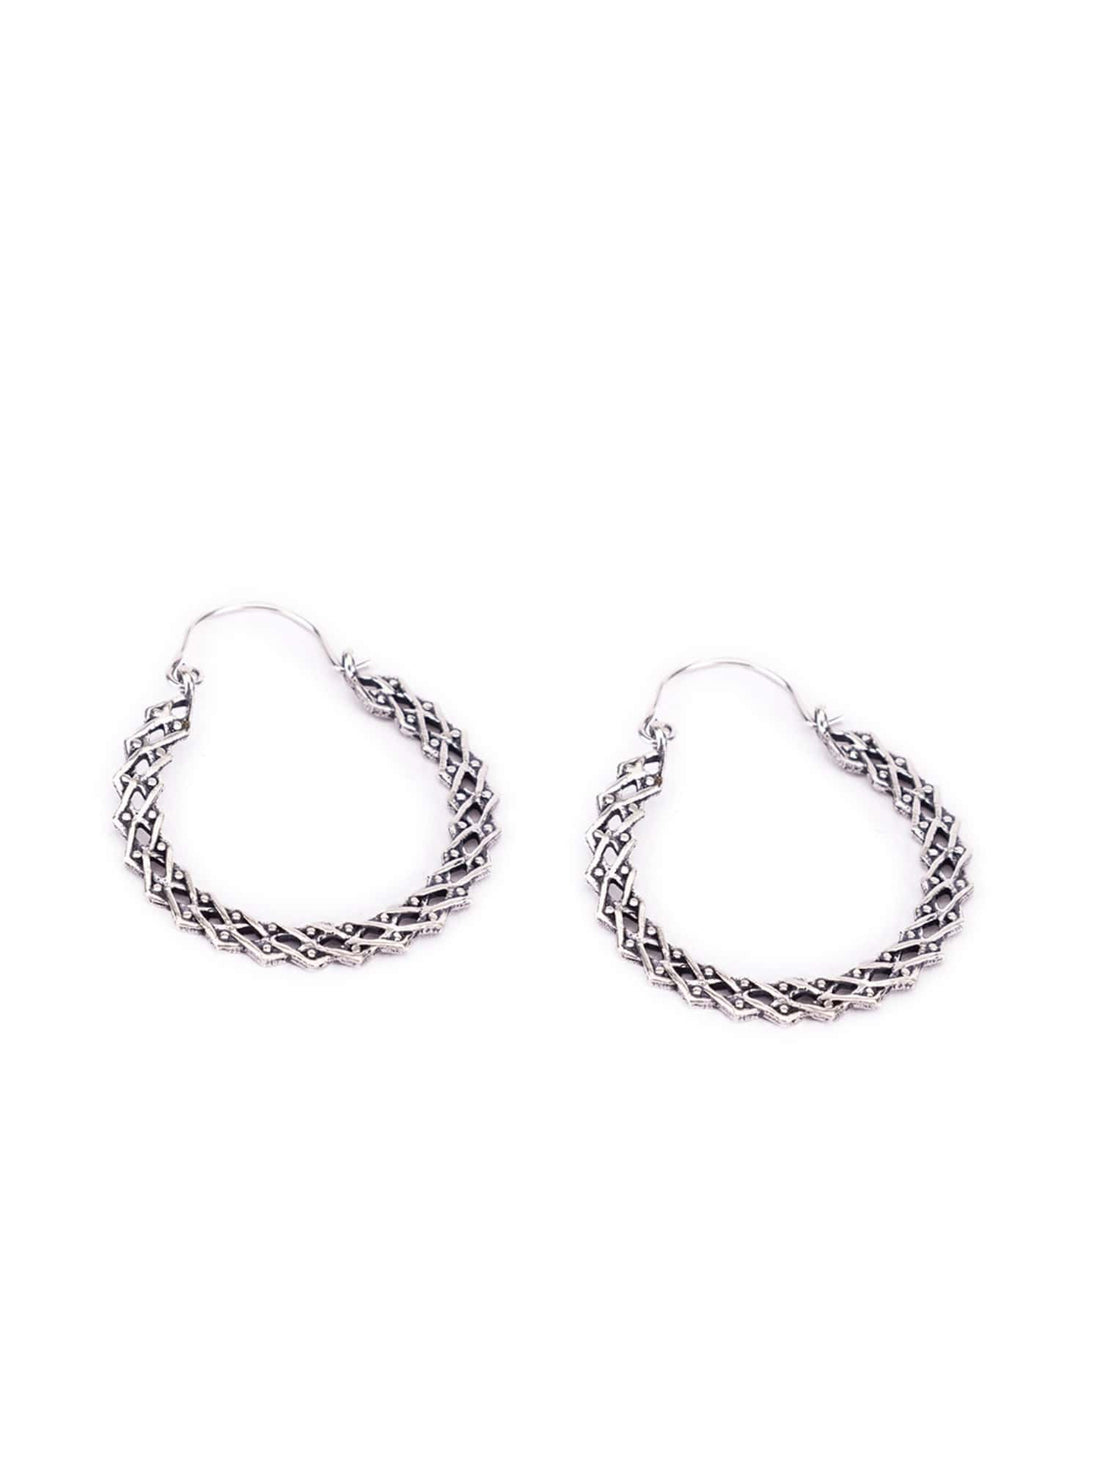 Party Wear Hoops Earrings - Western Silver-Plated Brass Earrings By Studio One Love